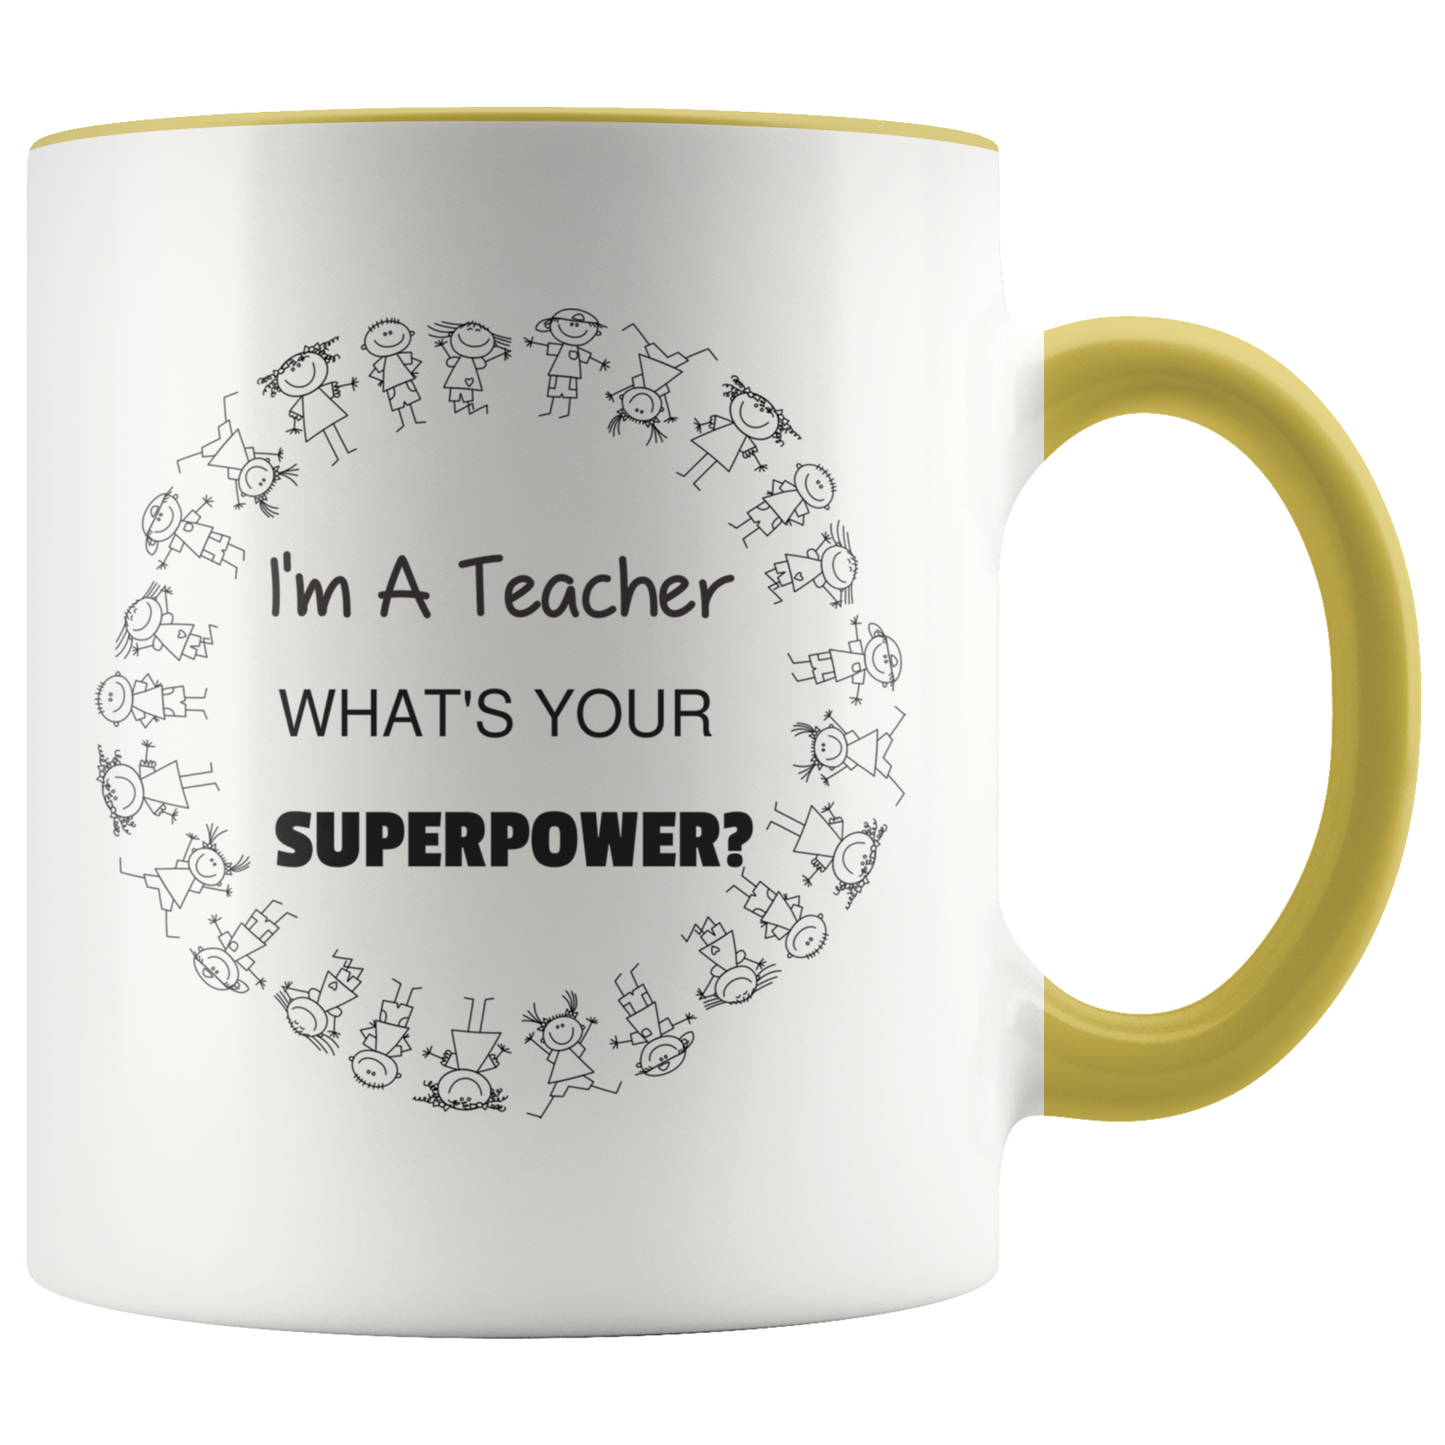 Mug with Saying | "I'm A Teacher, What's Your Superpower?" Mug | 11 oz. Ceramic Mug